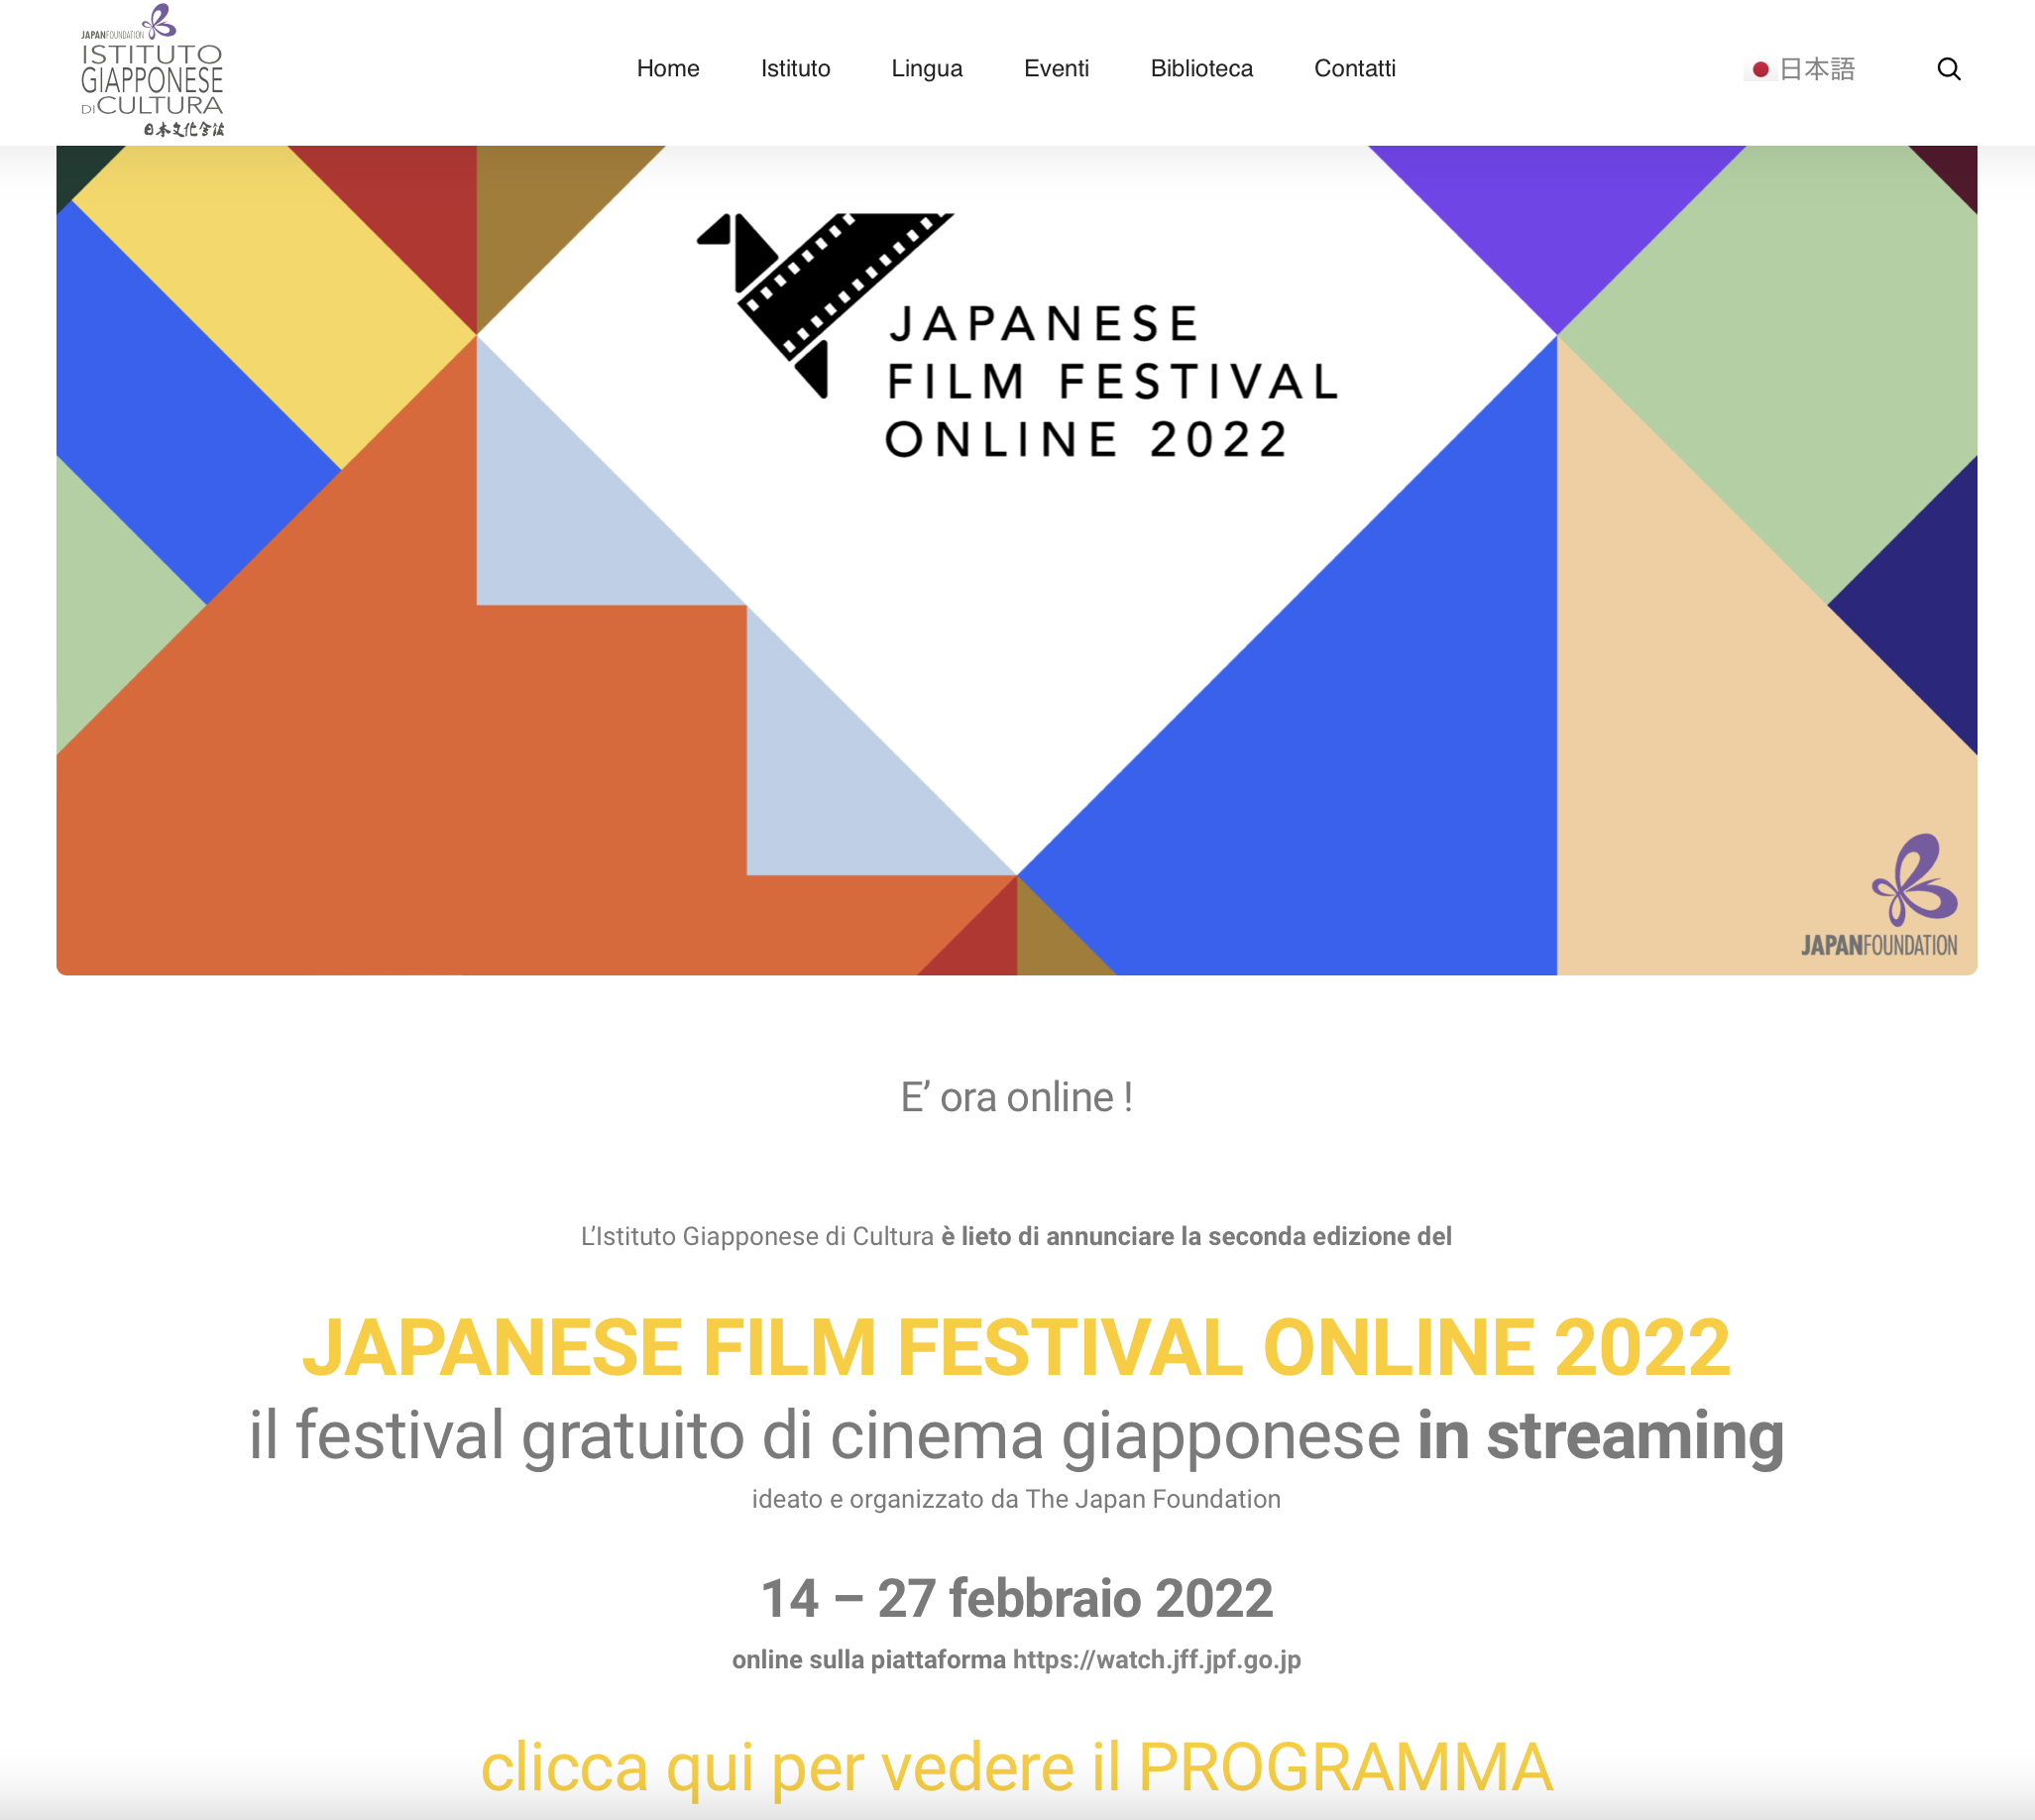 オンライン日本映画祭開催中、世界25か国で約20作品を無料で視聴可能 2月14日〜27日_f0234936_18134259.png